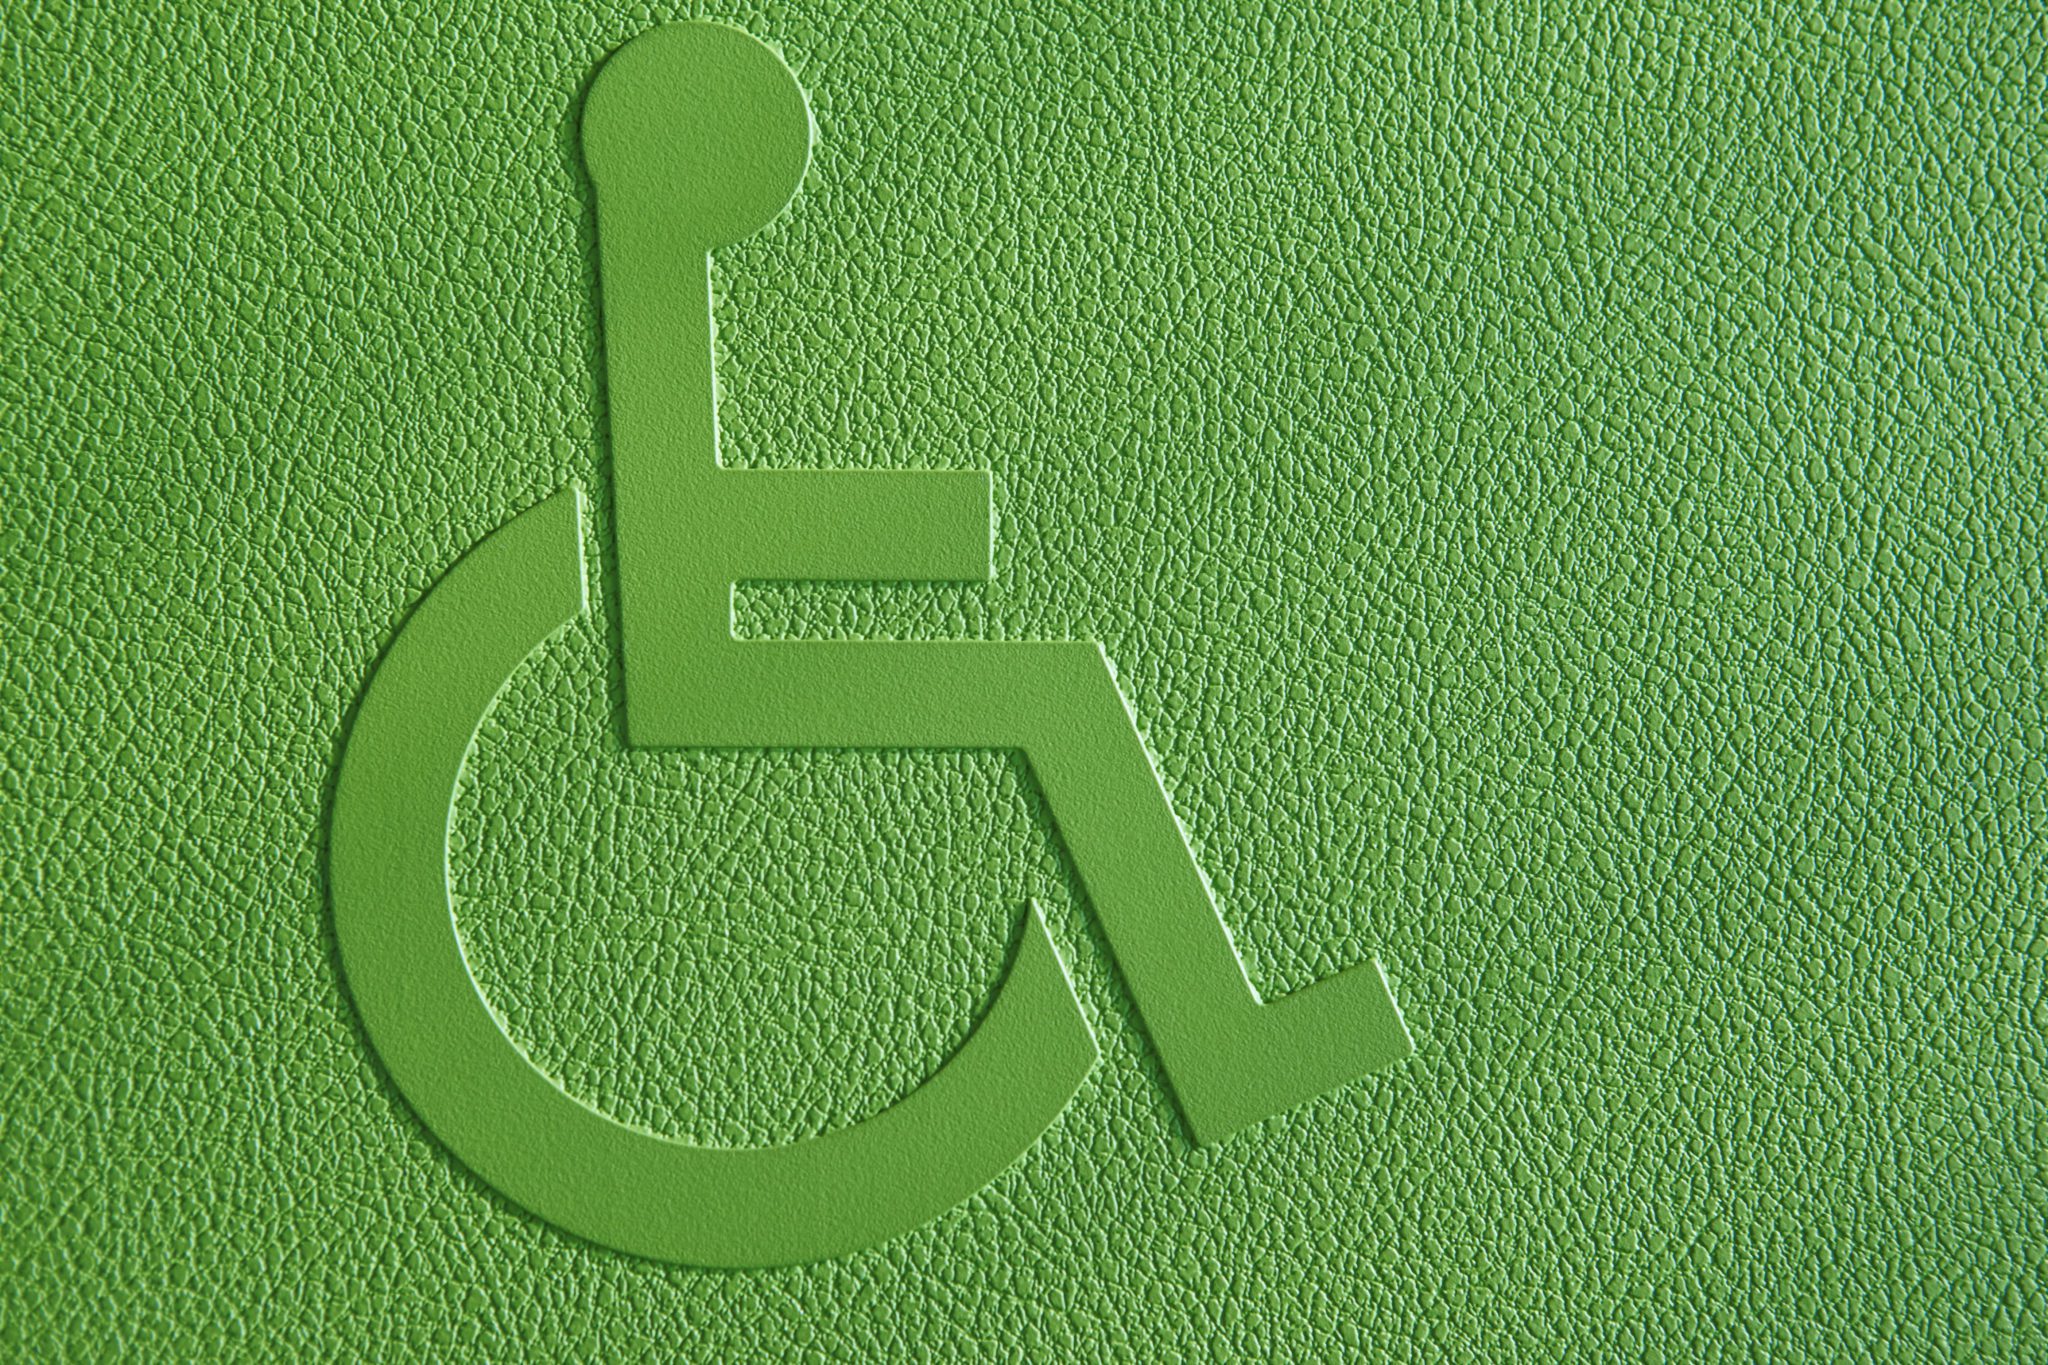 Símbolo de pessoas com deficiência